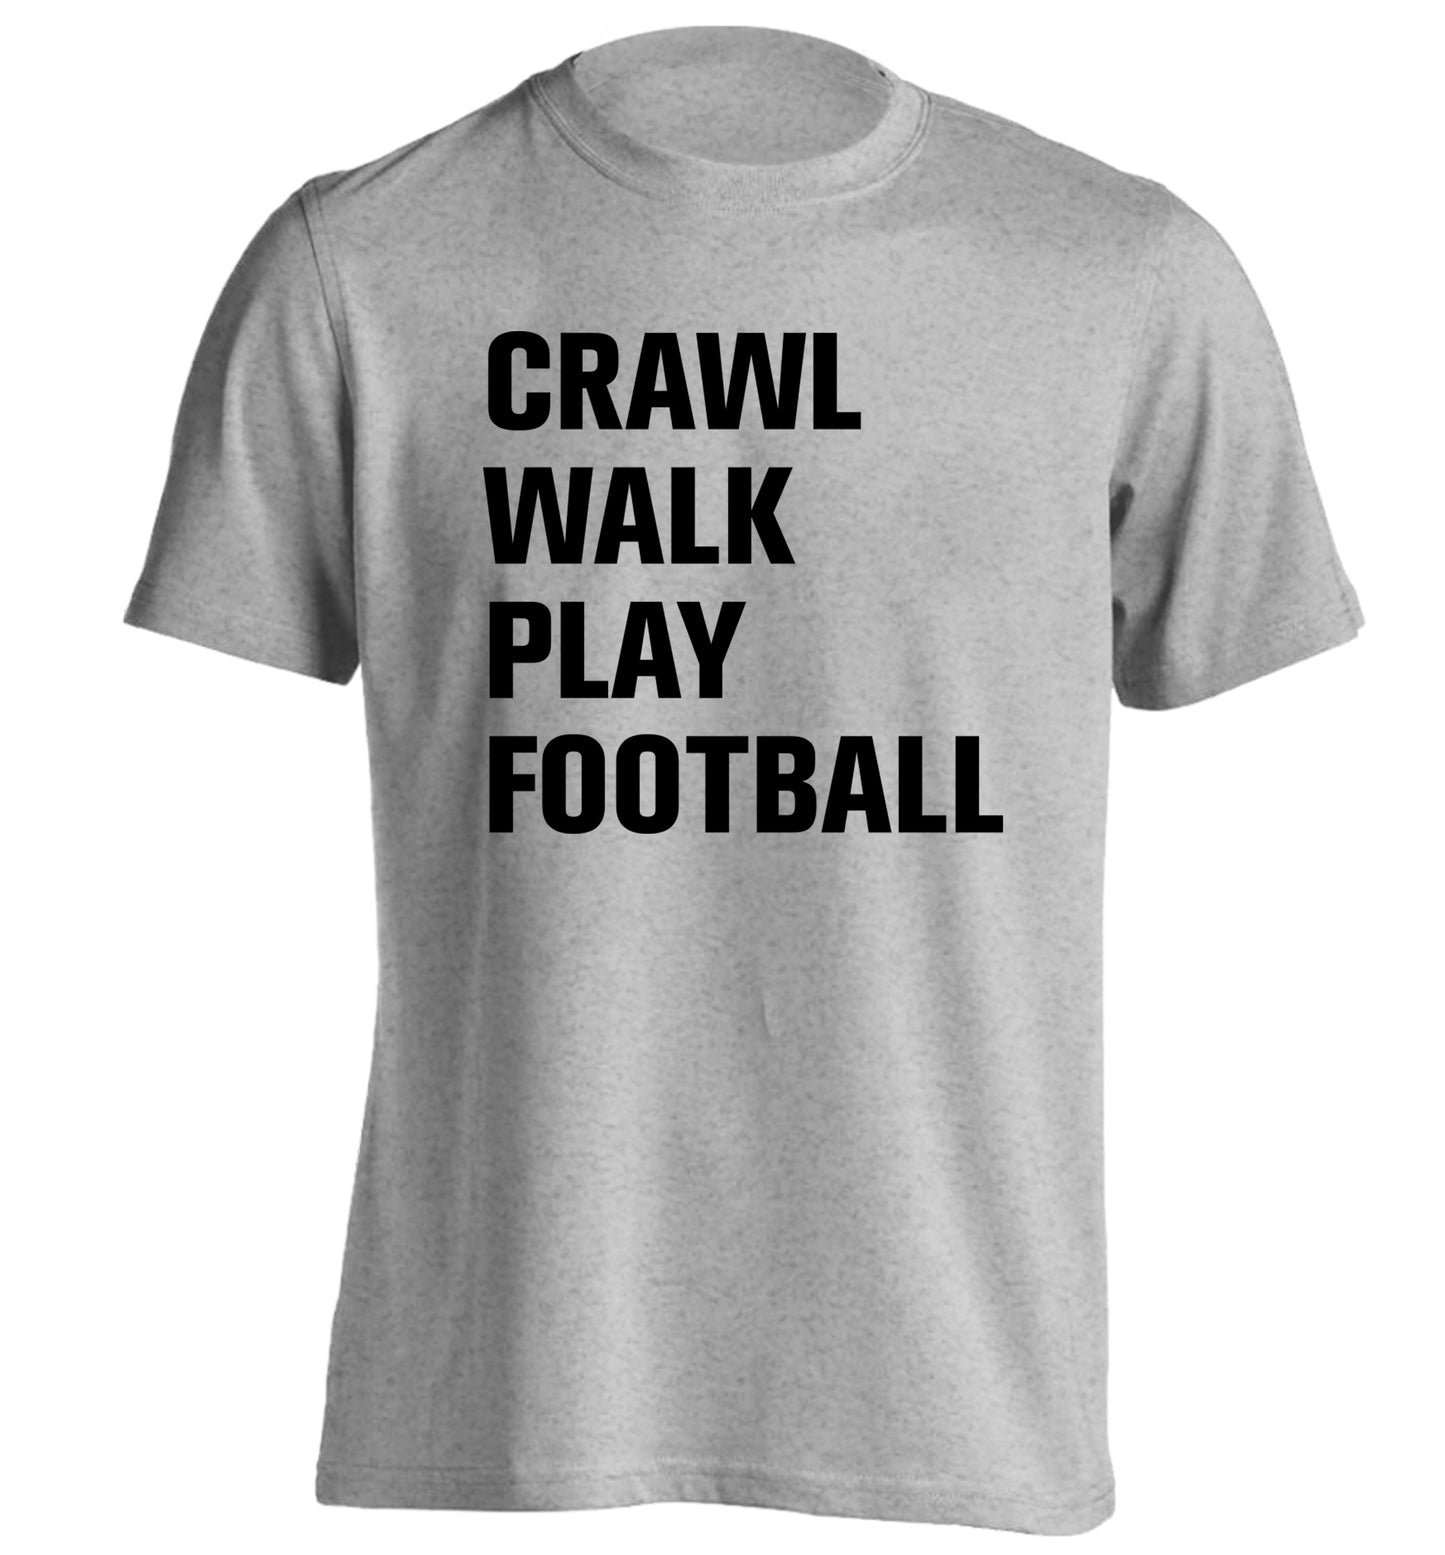 Crawl, walk, play football adults unisex grey Tshirt 2XL